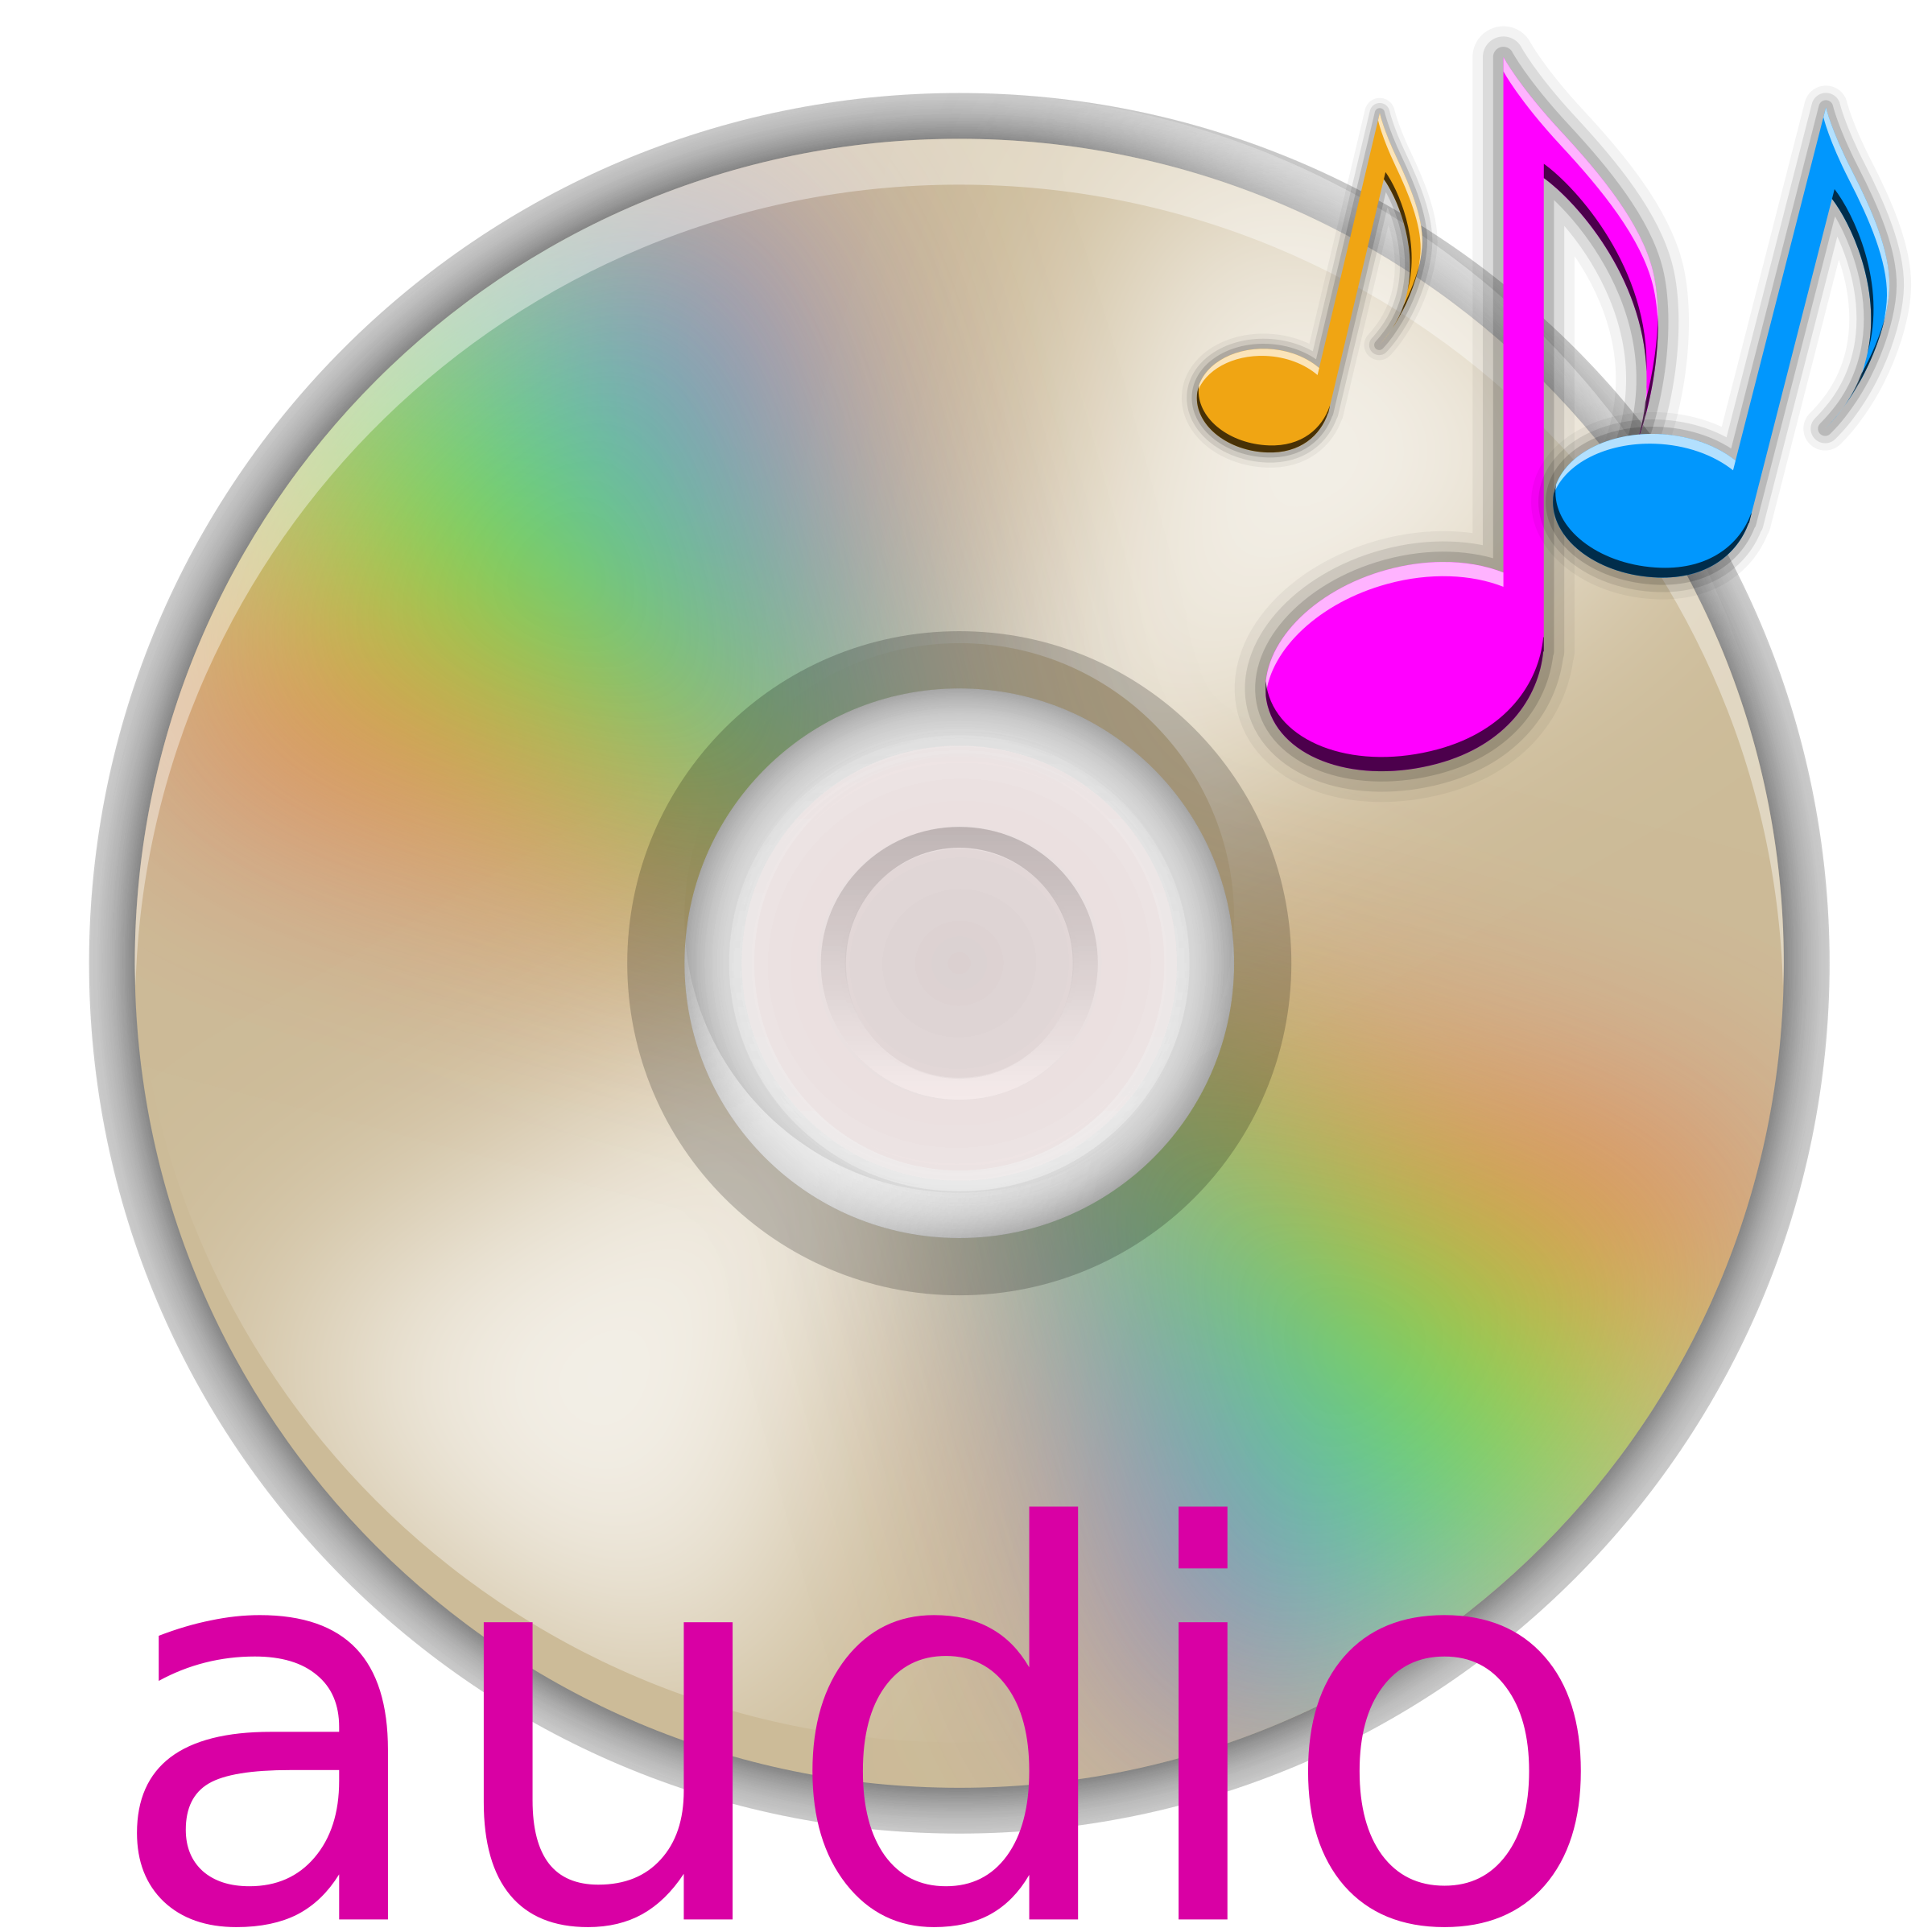 Audio Equipment clipart, clip